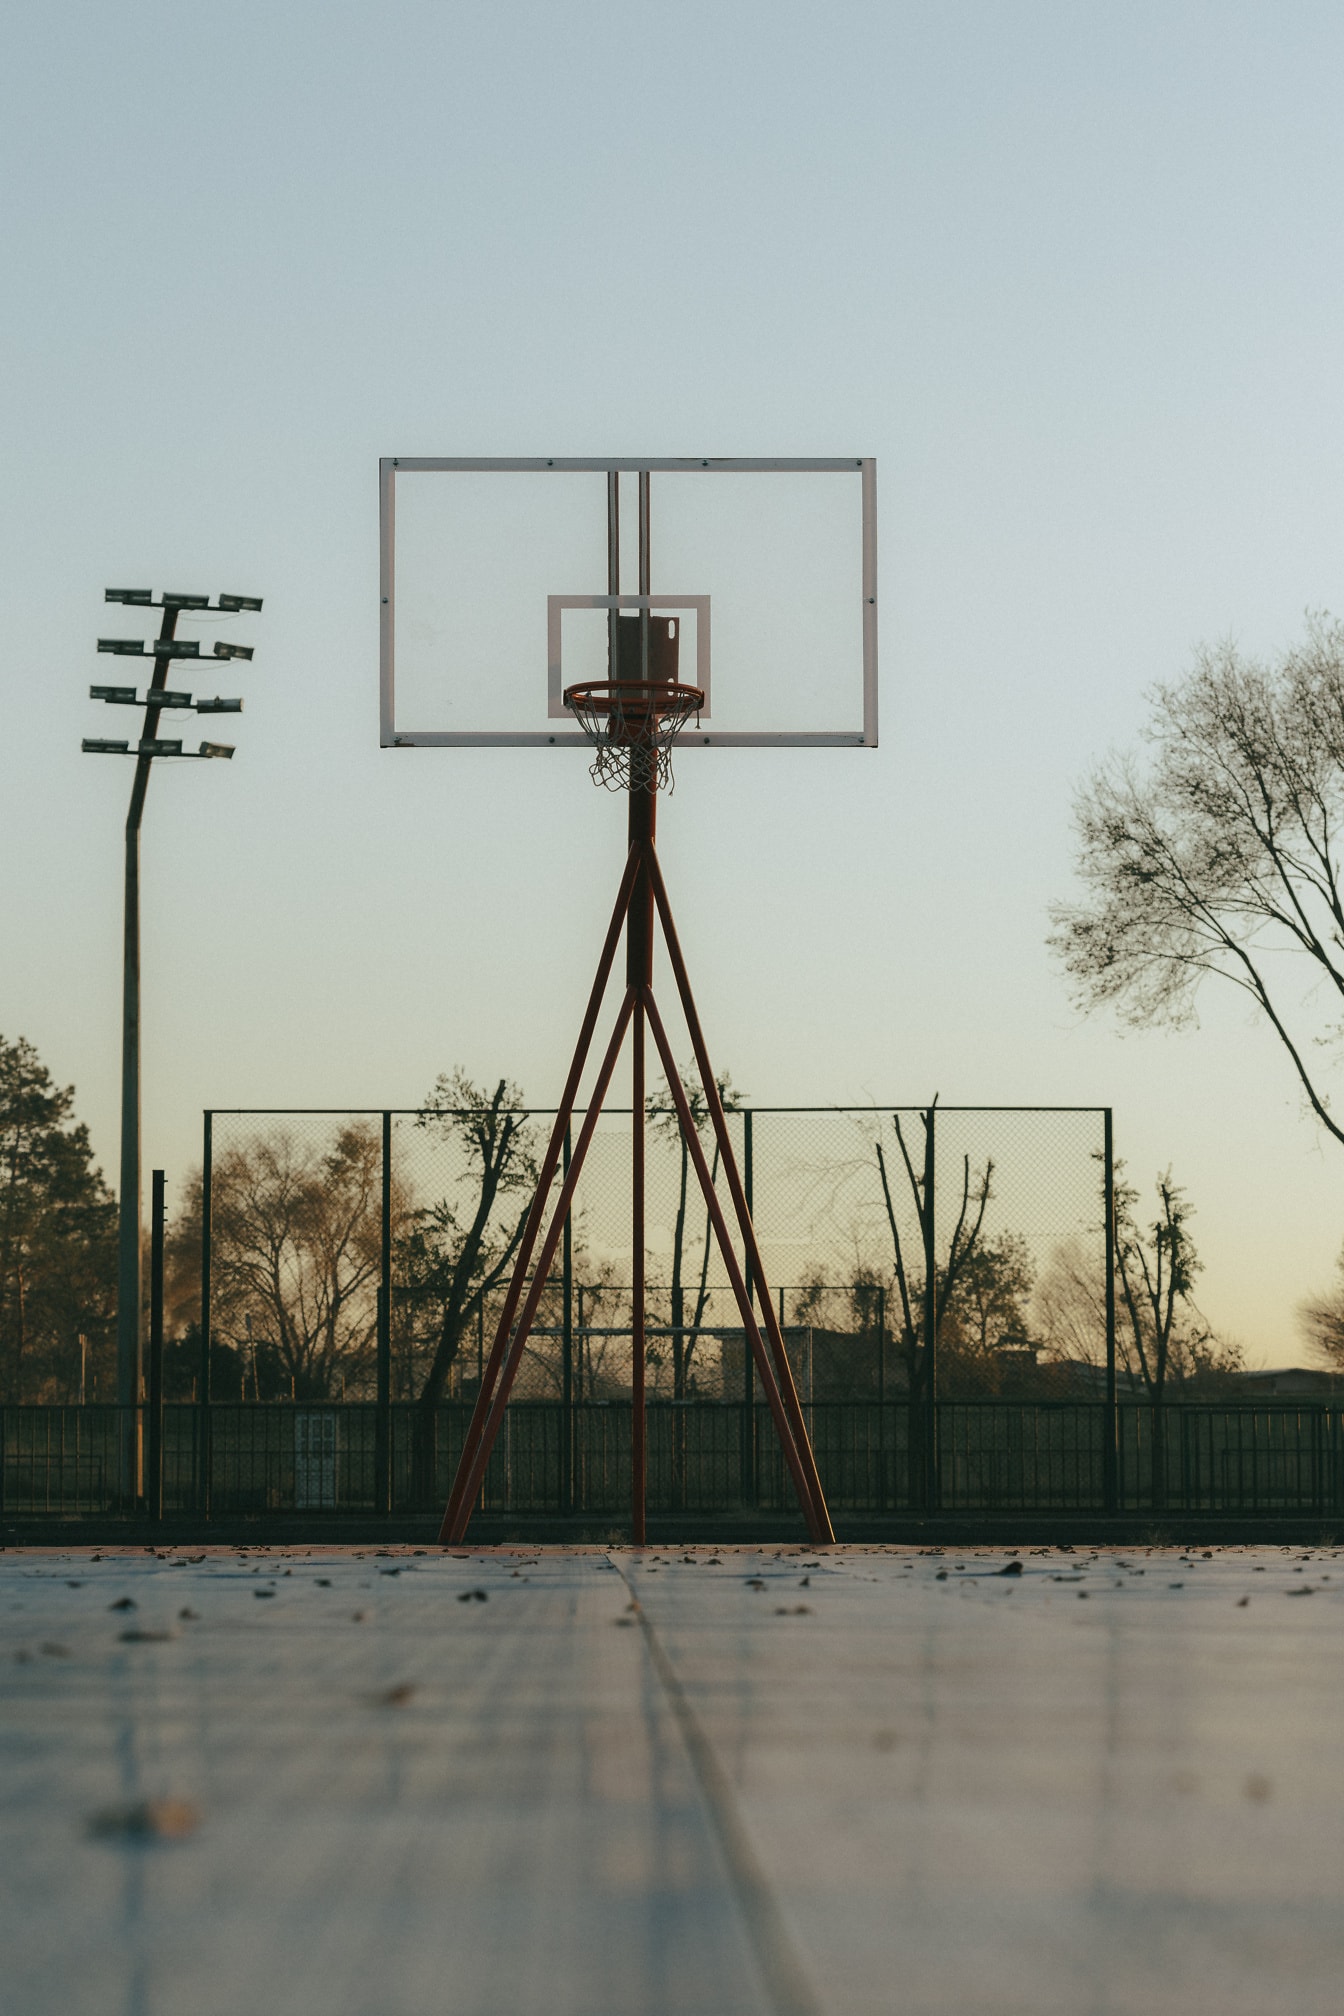 Kosárlabda karika átlátszó háttámlával az üres kosárlabdapályán